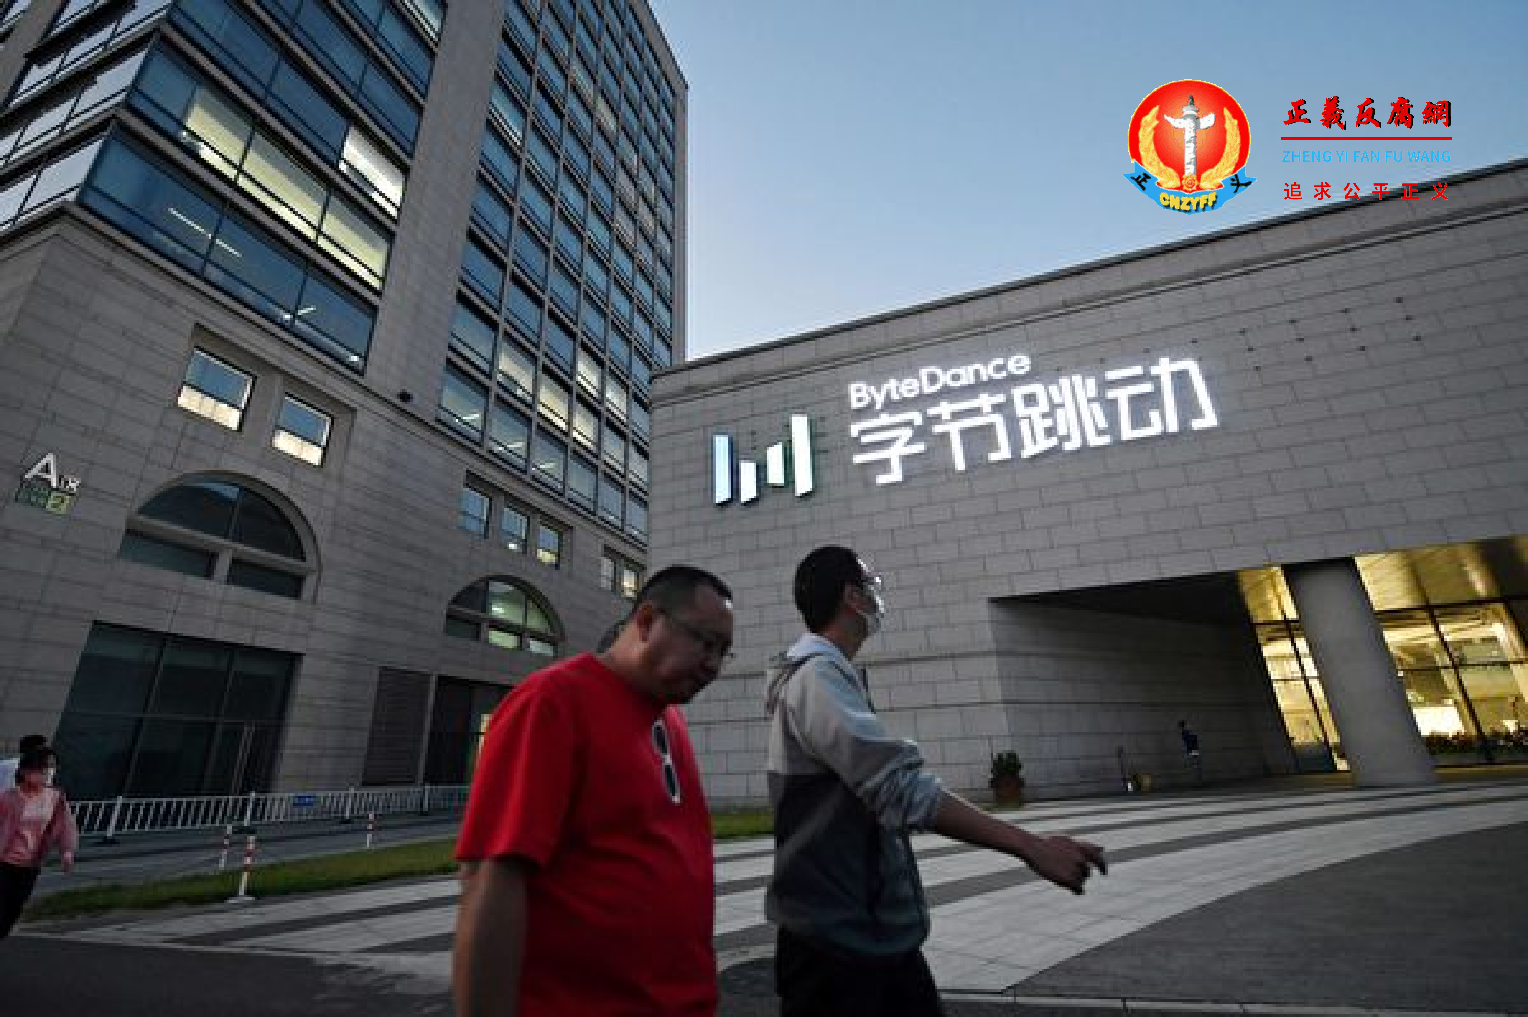 中国多间互联网企业被整改。图为，位于北京总部的字节跳动科技有限公司。.png